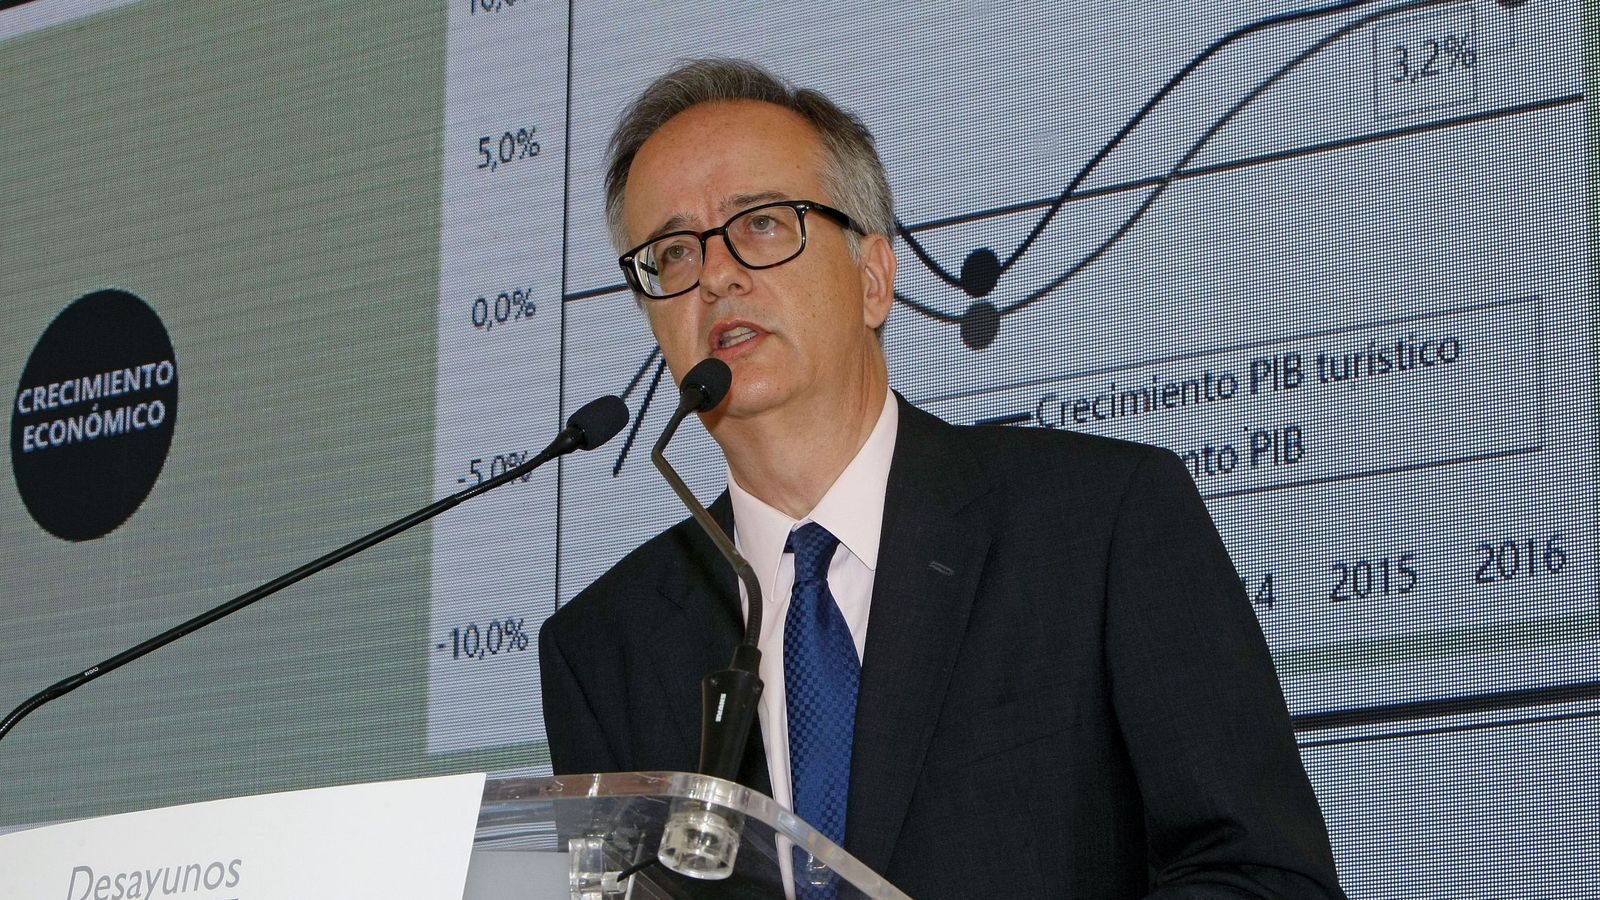 Foto: Simón Pedro Barceló, copresidente del grupo Barceló, en una ponencia en Alicante el pasado mes de julio. (EFE)